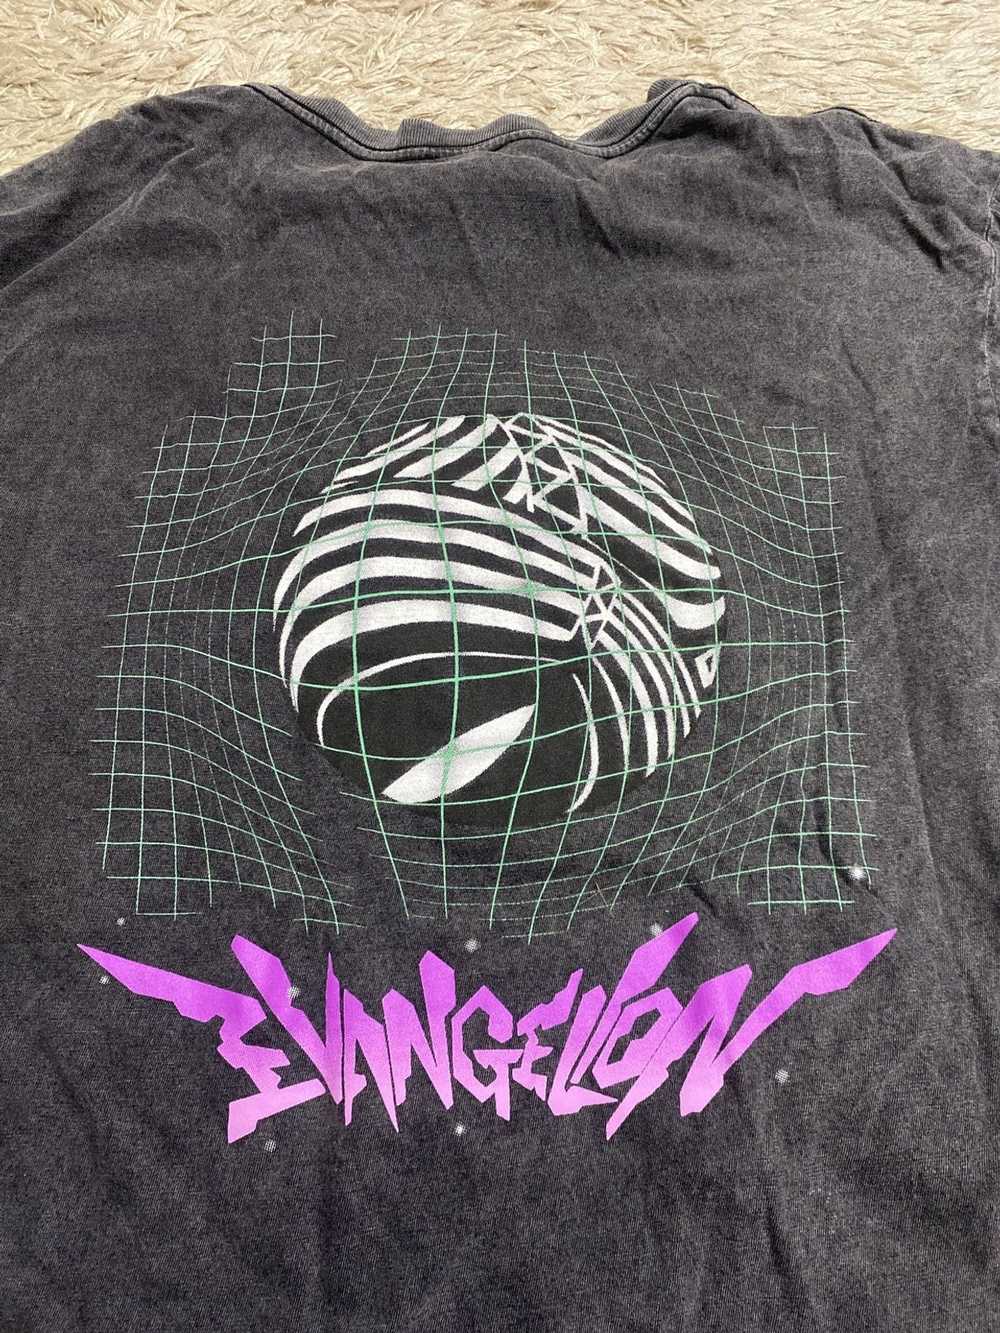 Vintage Bootleg Neon Genesis Evangelion - image 3